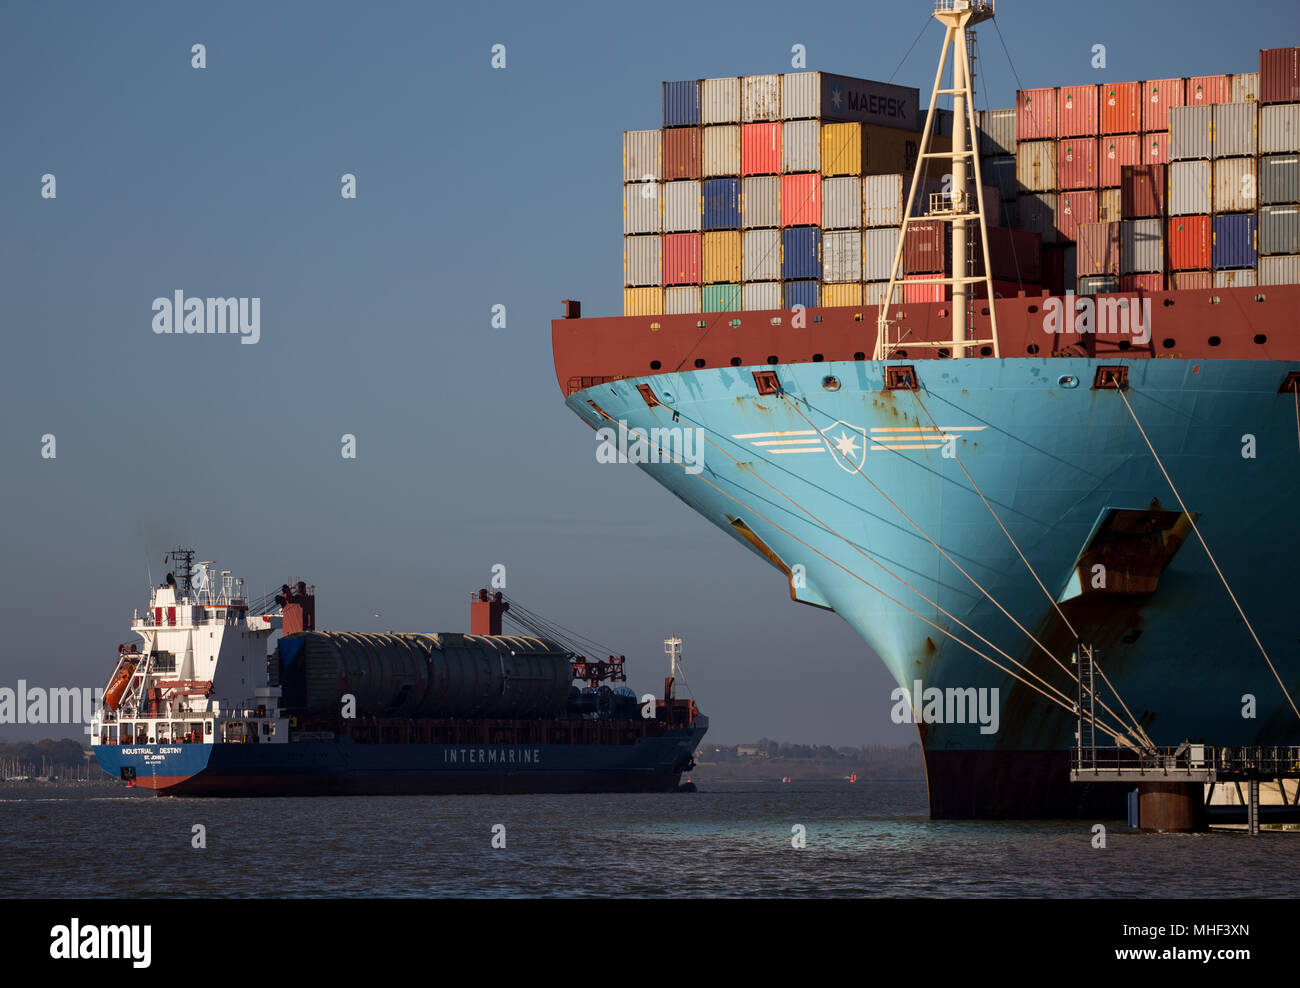 Maersk Container Ship, d'un zoom avant sur l'arc. Attaché au port. Un autre bateau passé Banque D'Images